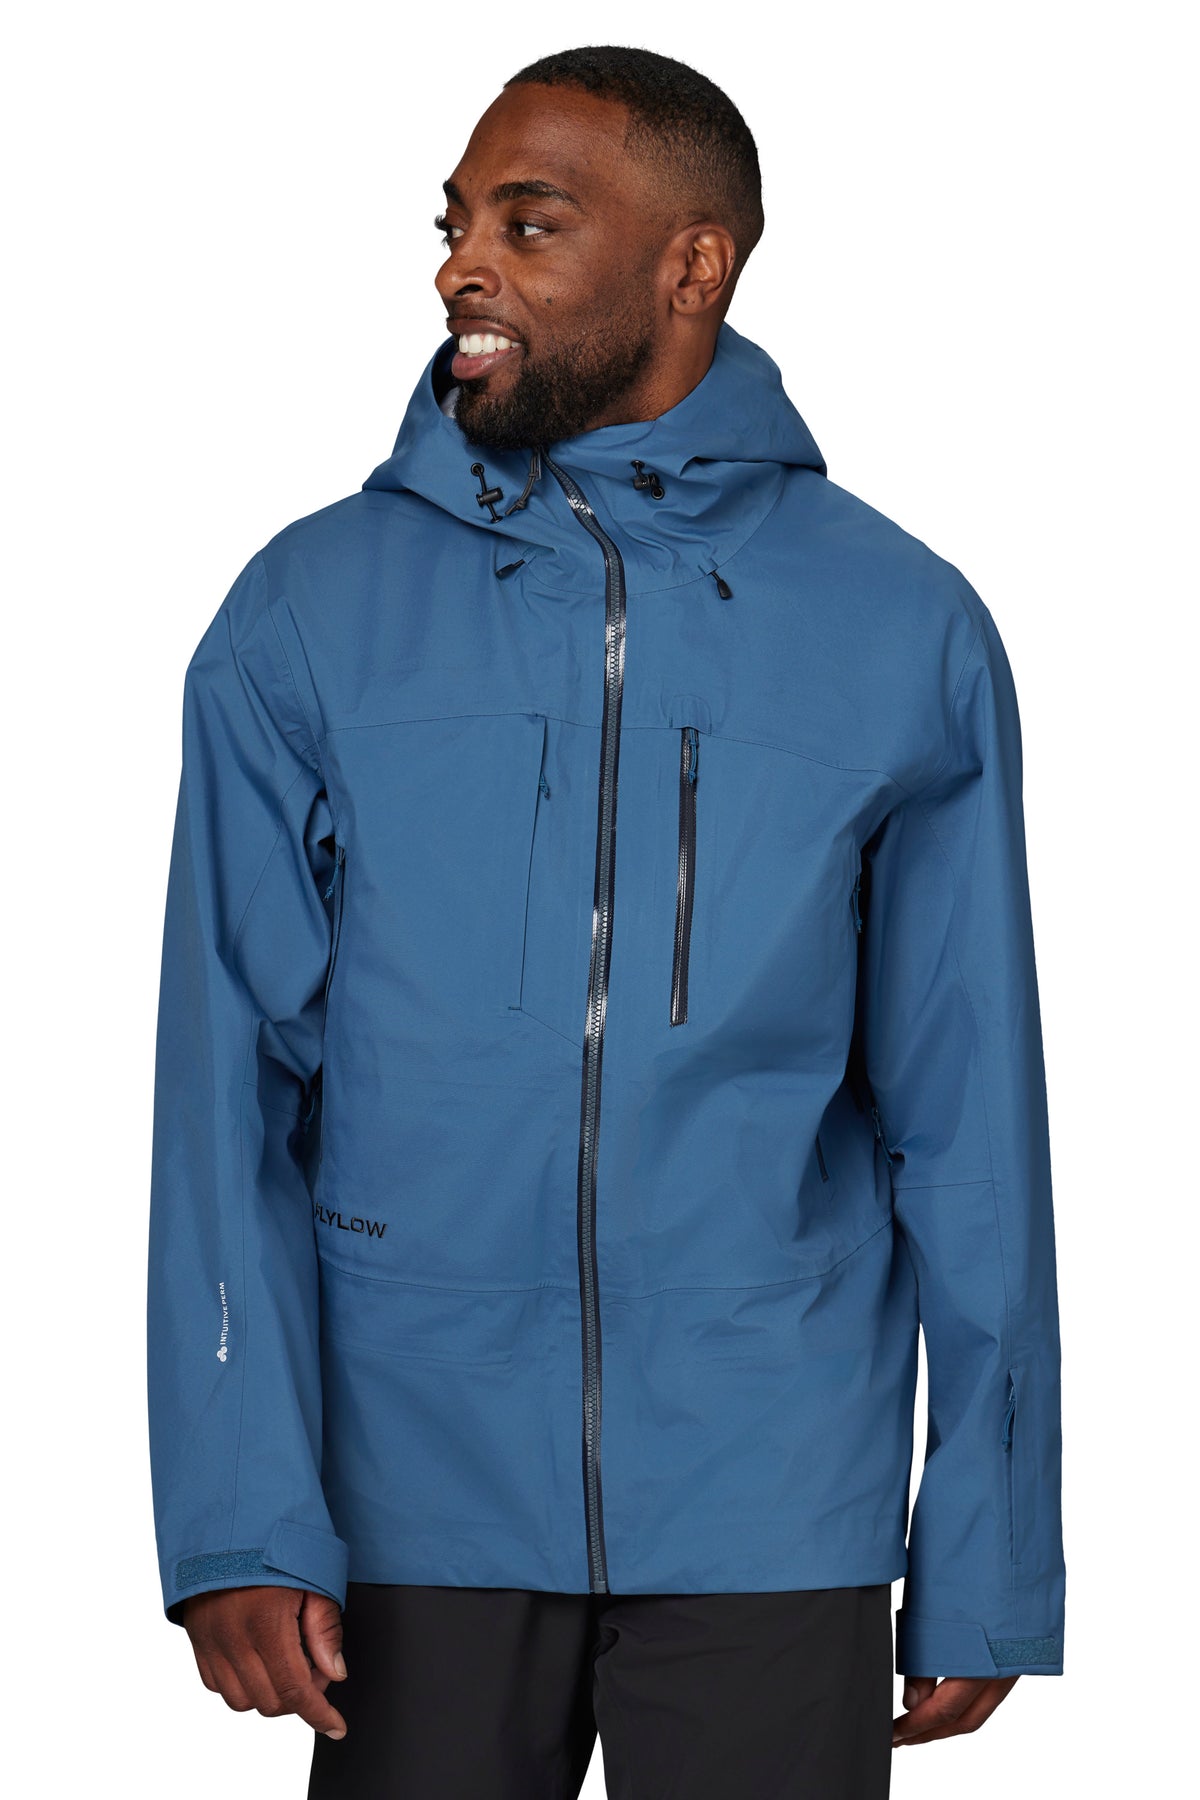 Black Windbreaker Jackets For Men Male Winter Solid Slit Pocket Jacket Long  Sleeve Zipper Fly Pocket Jacket Coat 